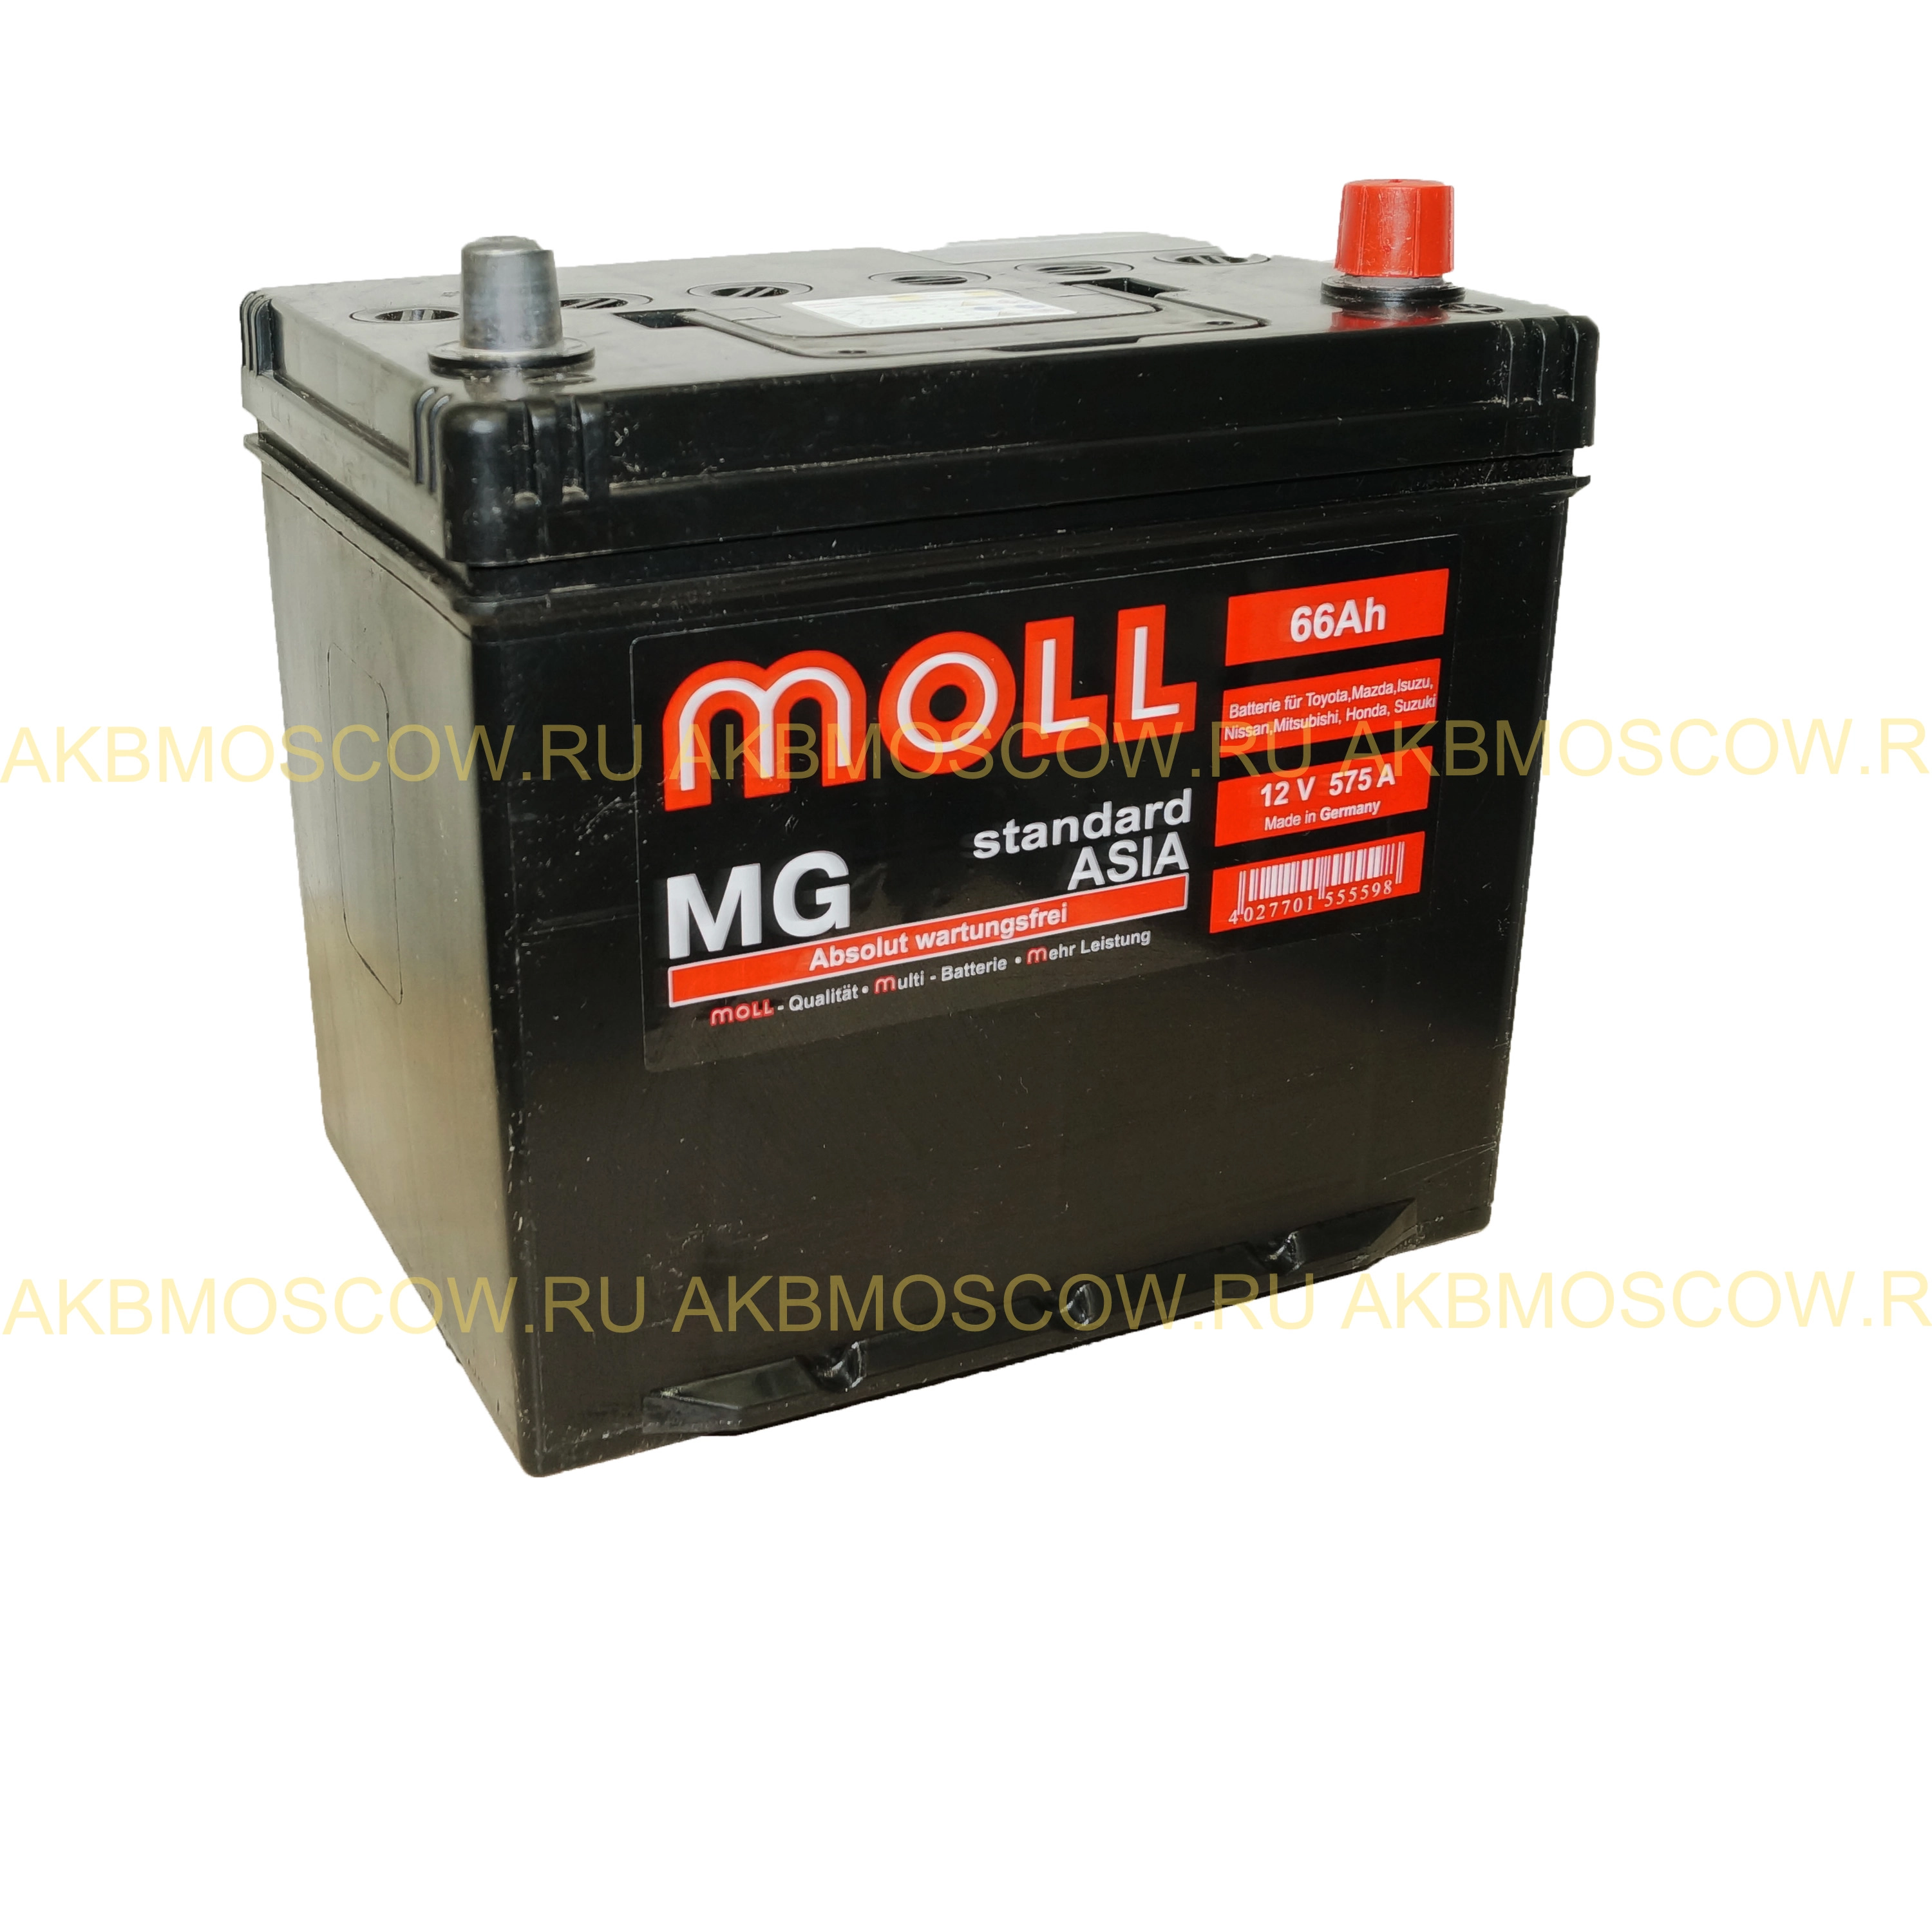 Аккумулятор asia 75. Аккумулятор автомобильный Moll MG Standard 75 Ач. Moll MG Standard Asia 75ah 715. Moll MG Standard Asia 75r 735a 250x170x220. Аккумулятор Moll MG 60l.